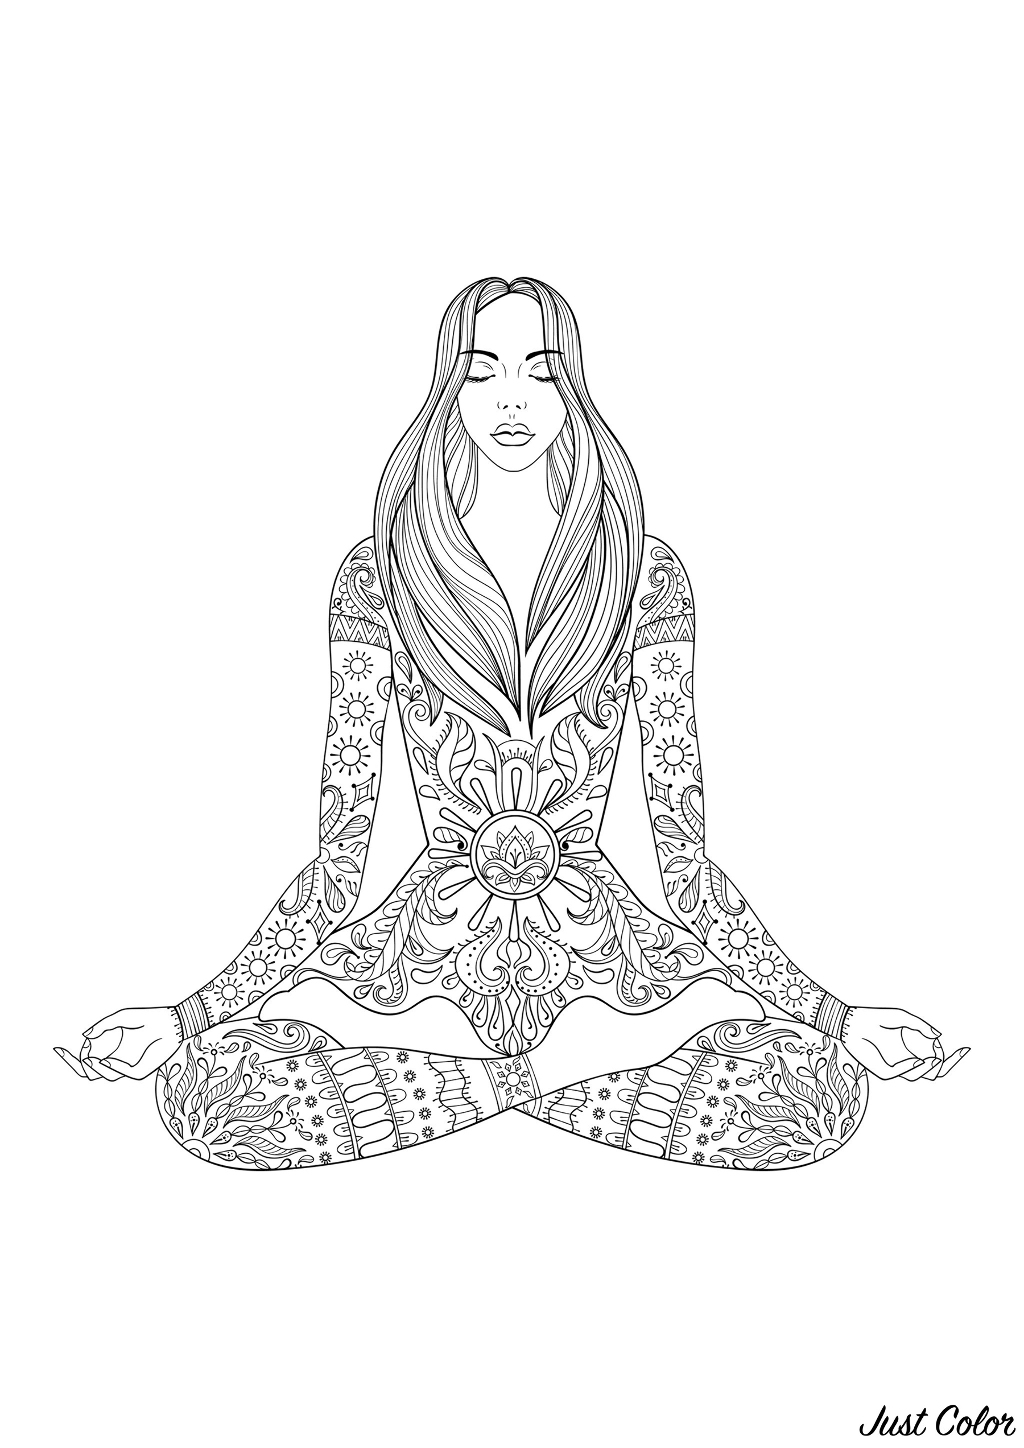 Femme assise en train de méditer, avec nombreux motifs sur son corps